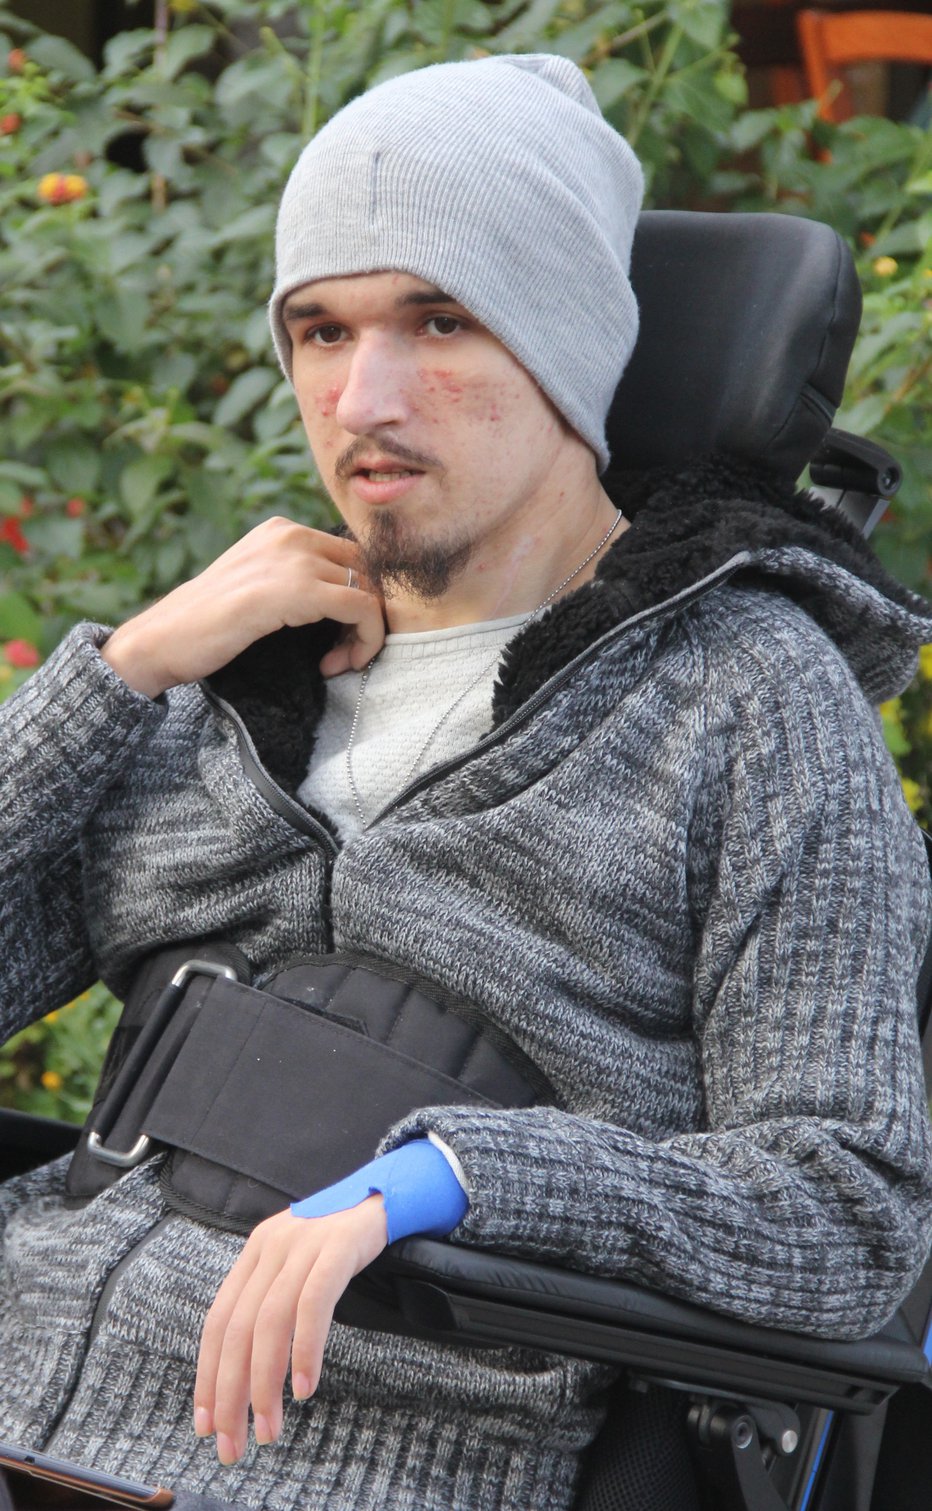 Fotografija: Priklenjen je na invalidski voziček.